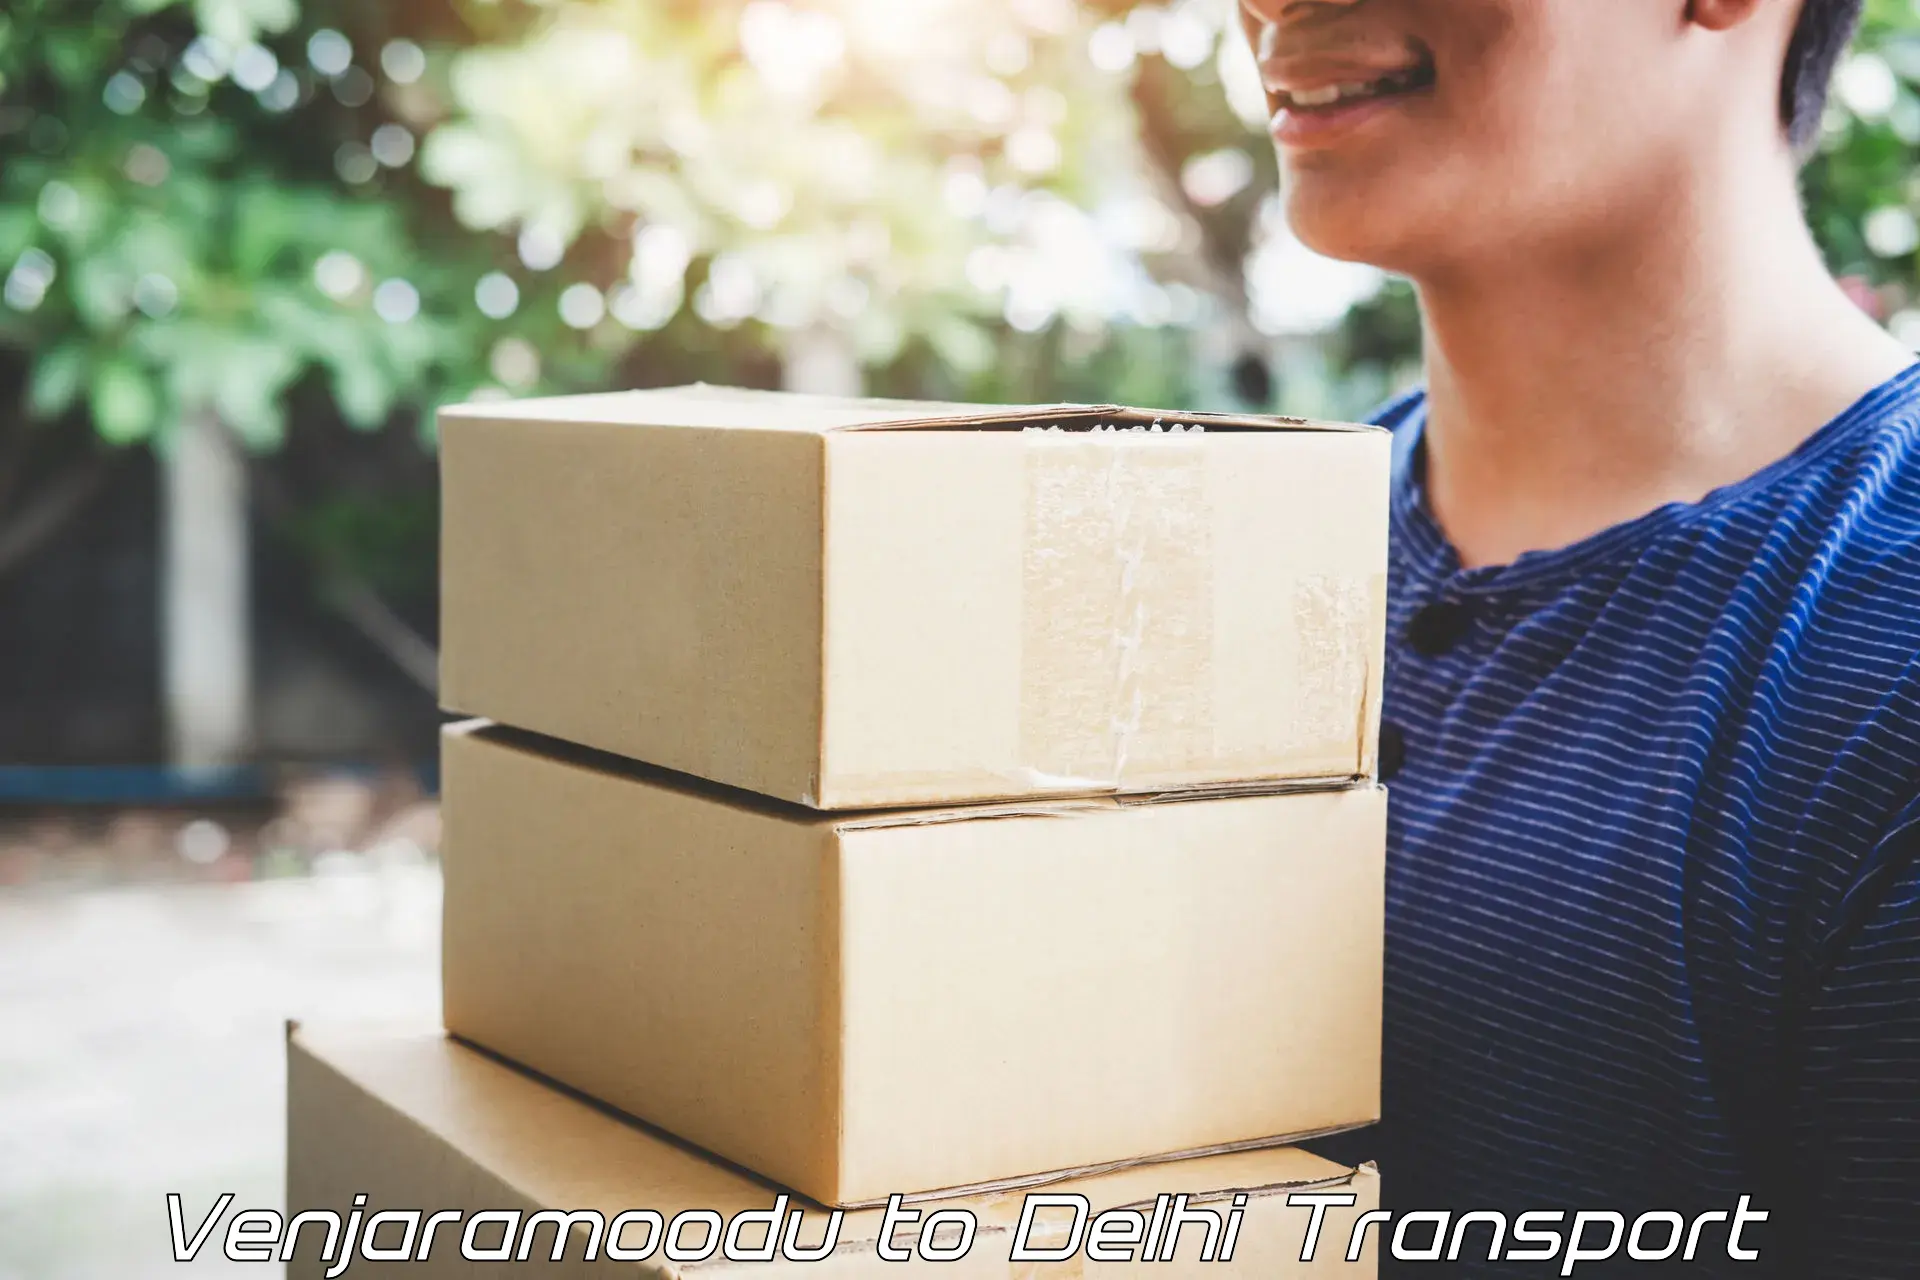 Cargo transportation services Venjaramoodu to Jamia Millia Islamia New Delhi